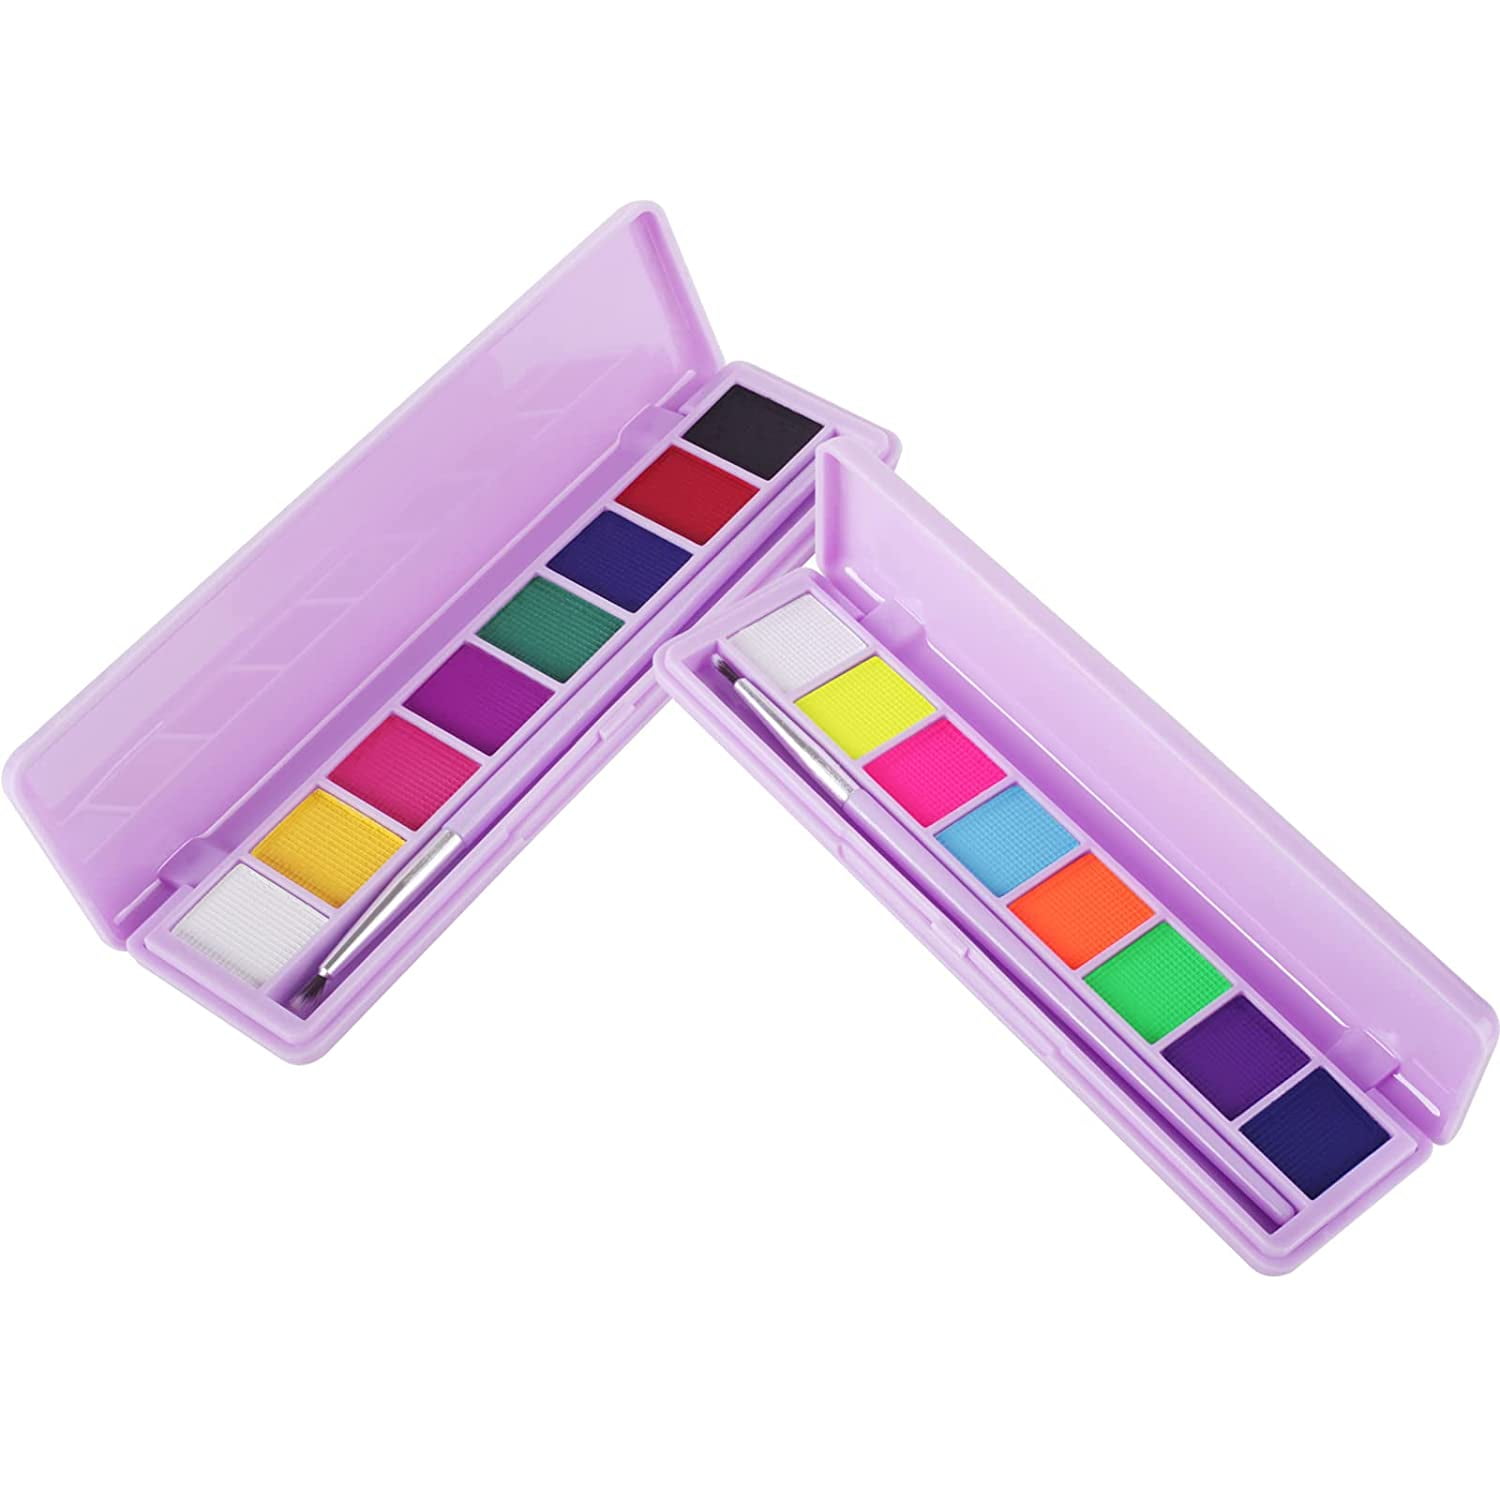 KYDA 8 Colors UV Glow Eyeliner Palette, Water Activated Eyeliner